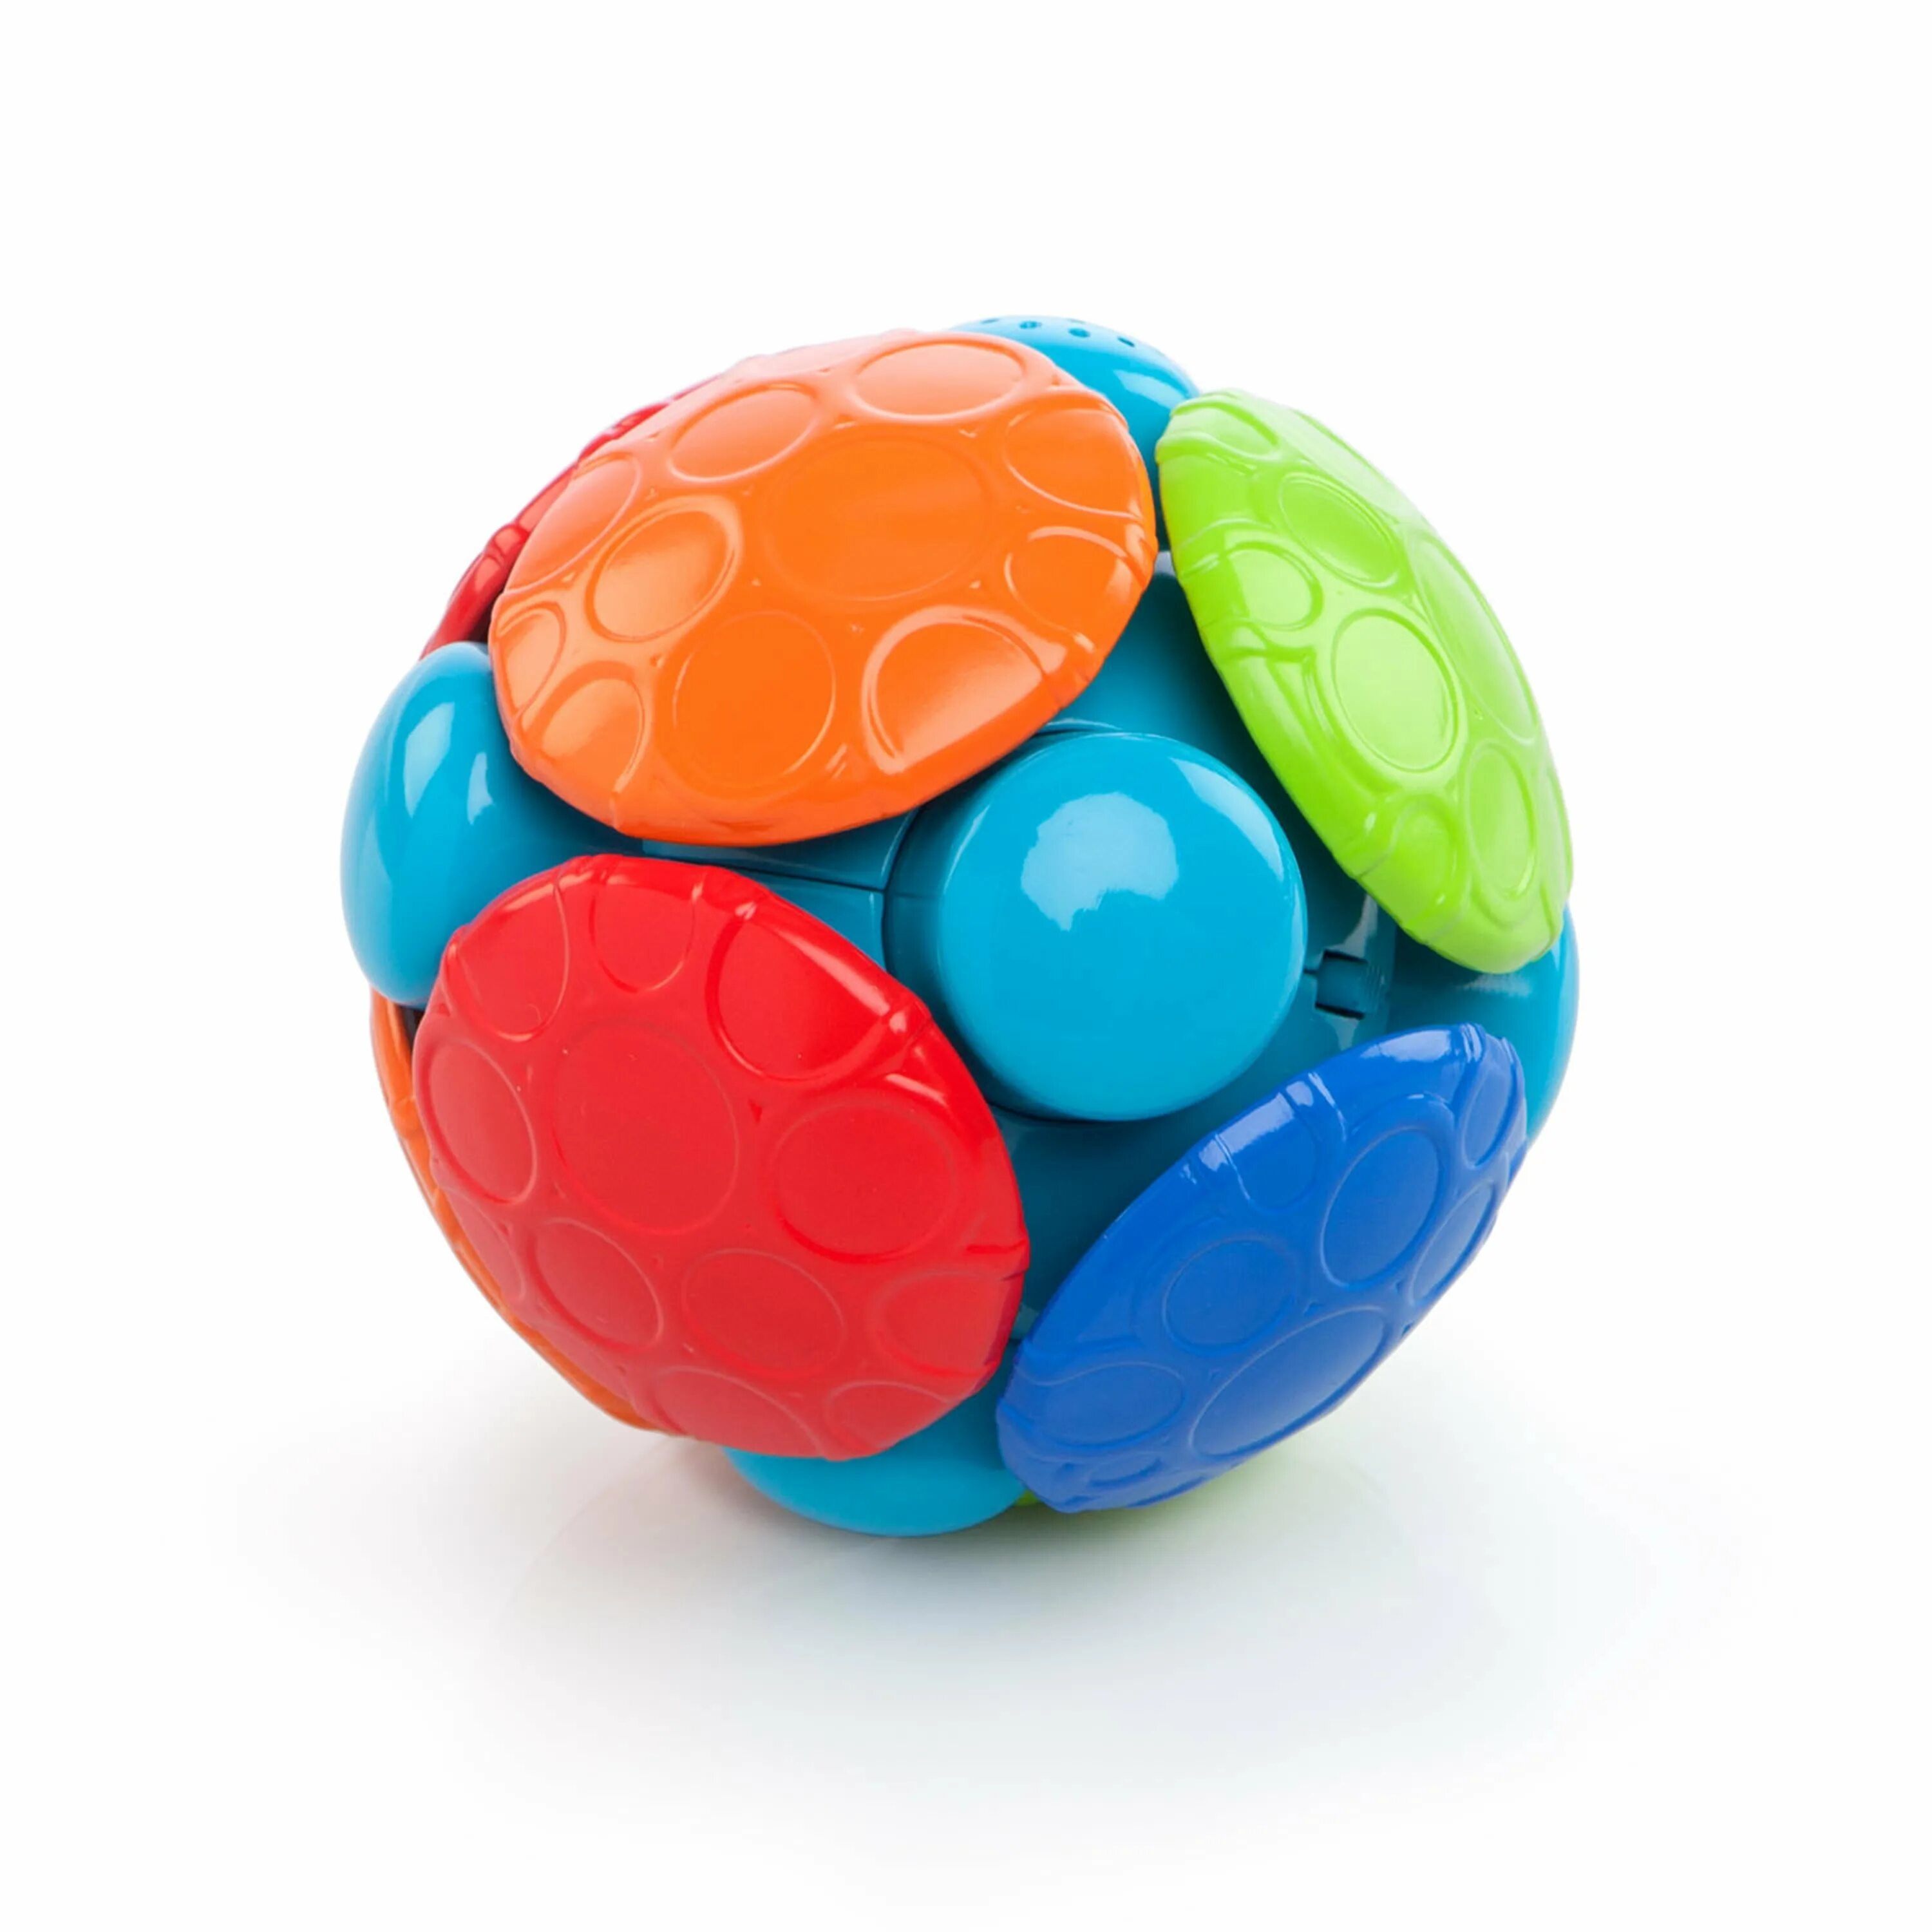 Детская игрушка шар. Oball мячик с погремушкой. Музыкальный вибро мяч Oball. Вибрирующий мячик для детей. Игрушка детская мячик с вибро.